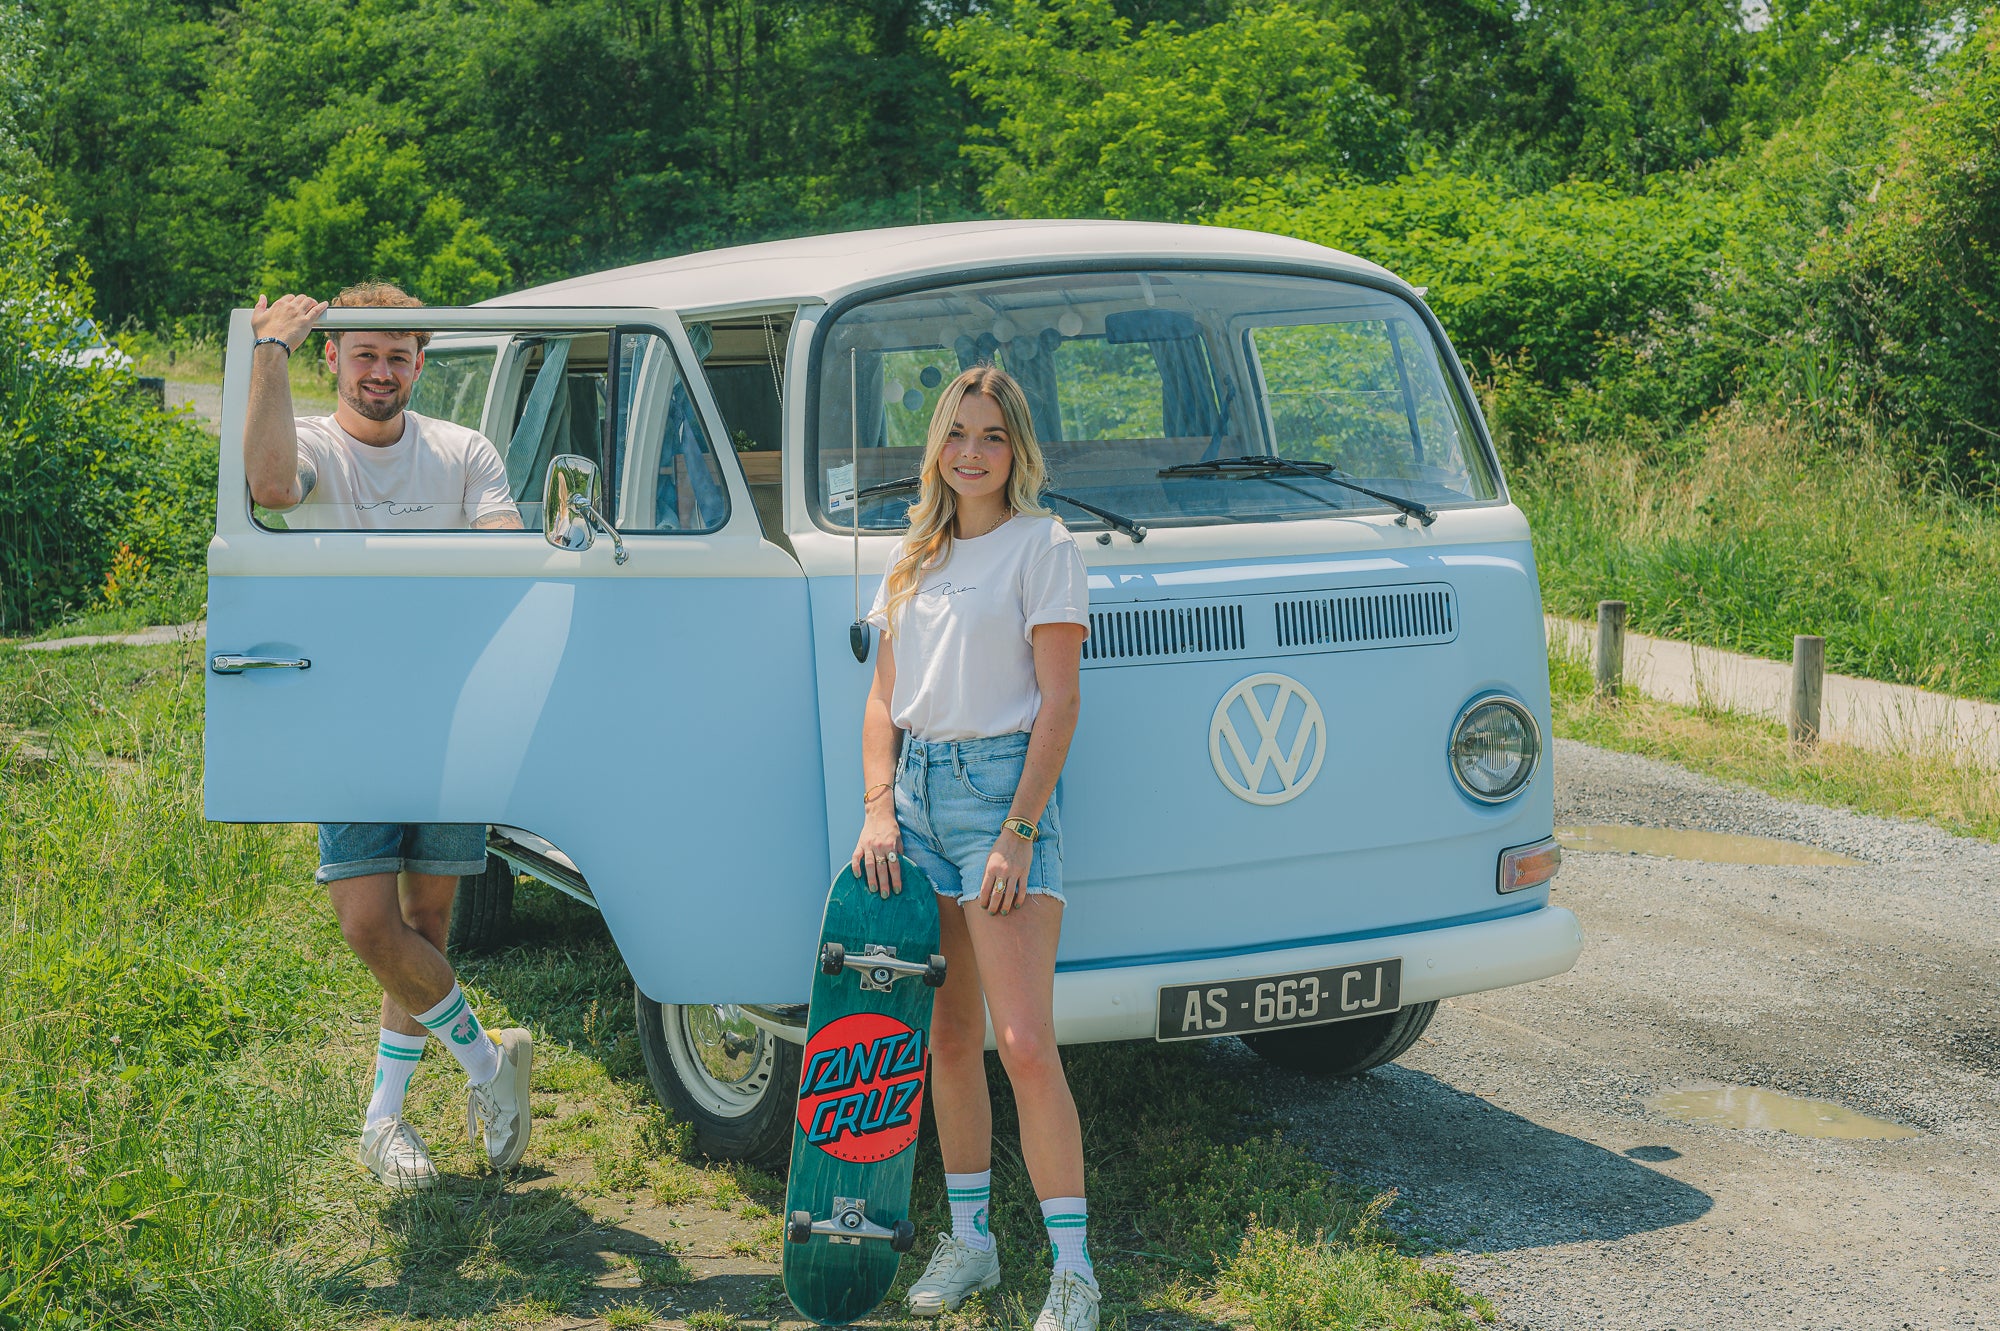 Sur la photo, il y a un homme et une femme debout à côté d'un van Volkswagen de couleur bleu pastel. L'homme est à gauche, il est appuyé sur la portière. La femme sur la droite tient un skateboard avec l'inscription "Santa Cruz". 